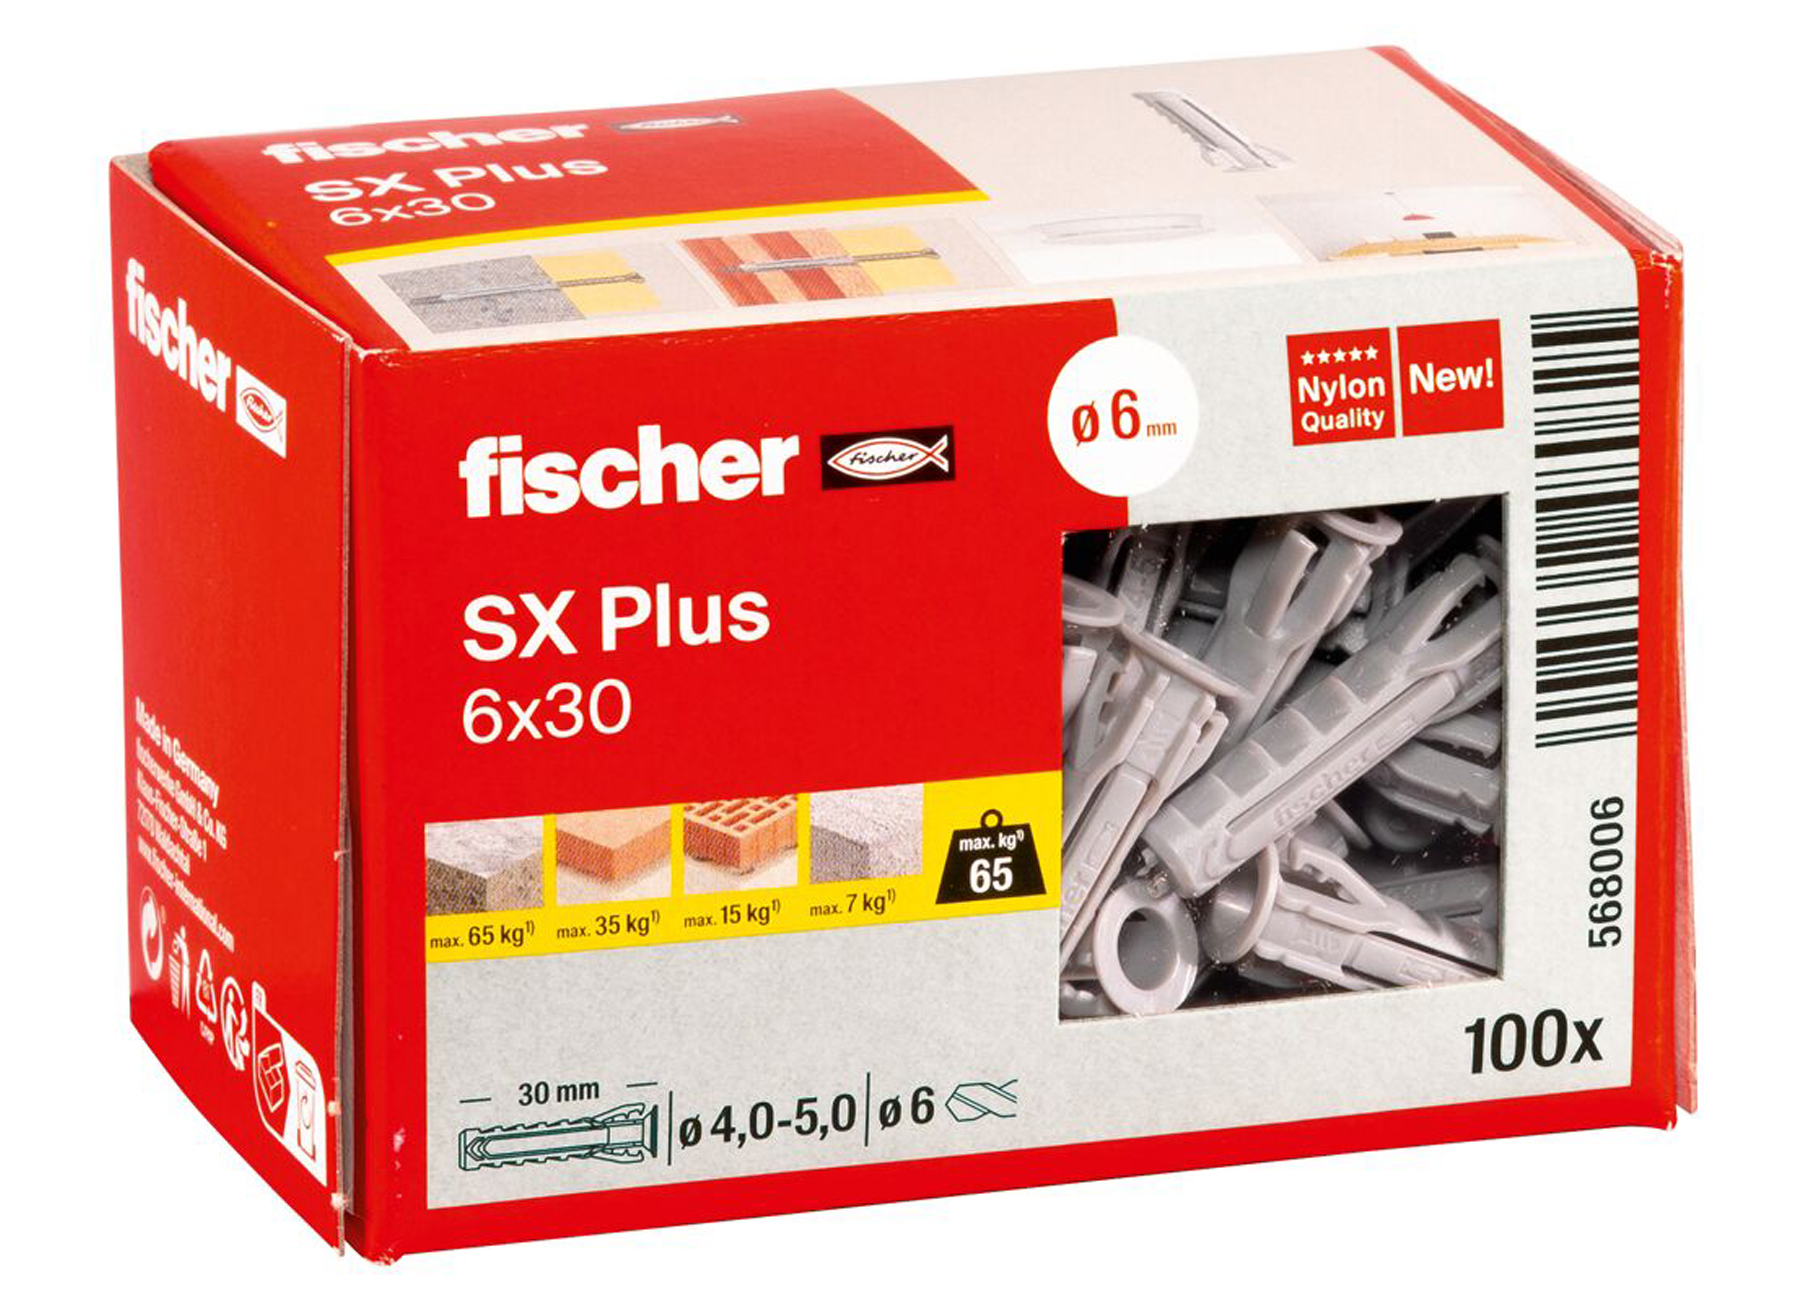 FISCHER SX PLUS 6X30 100 STK